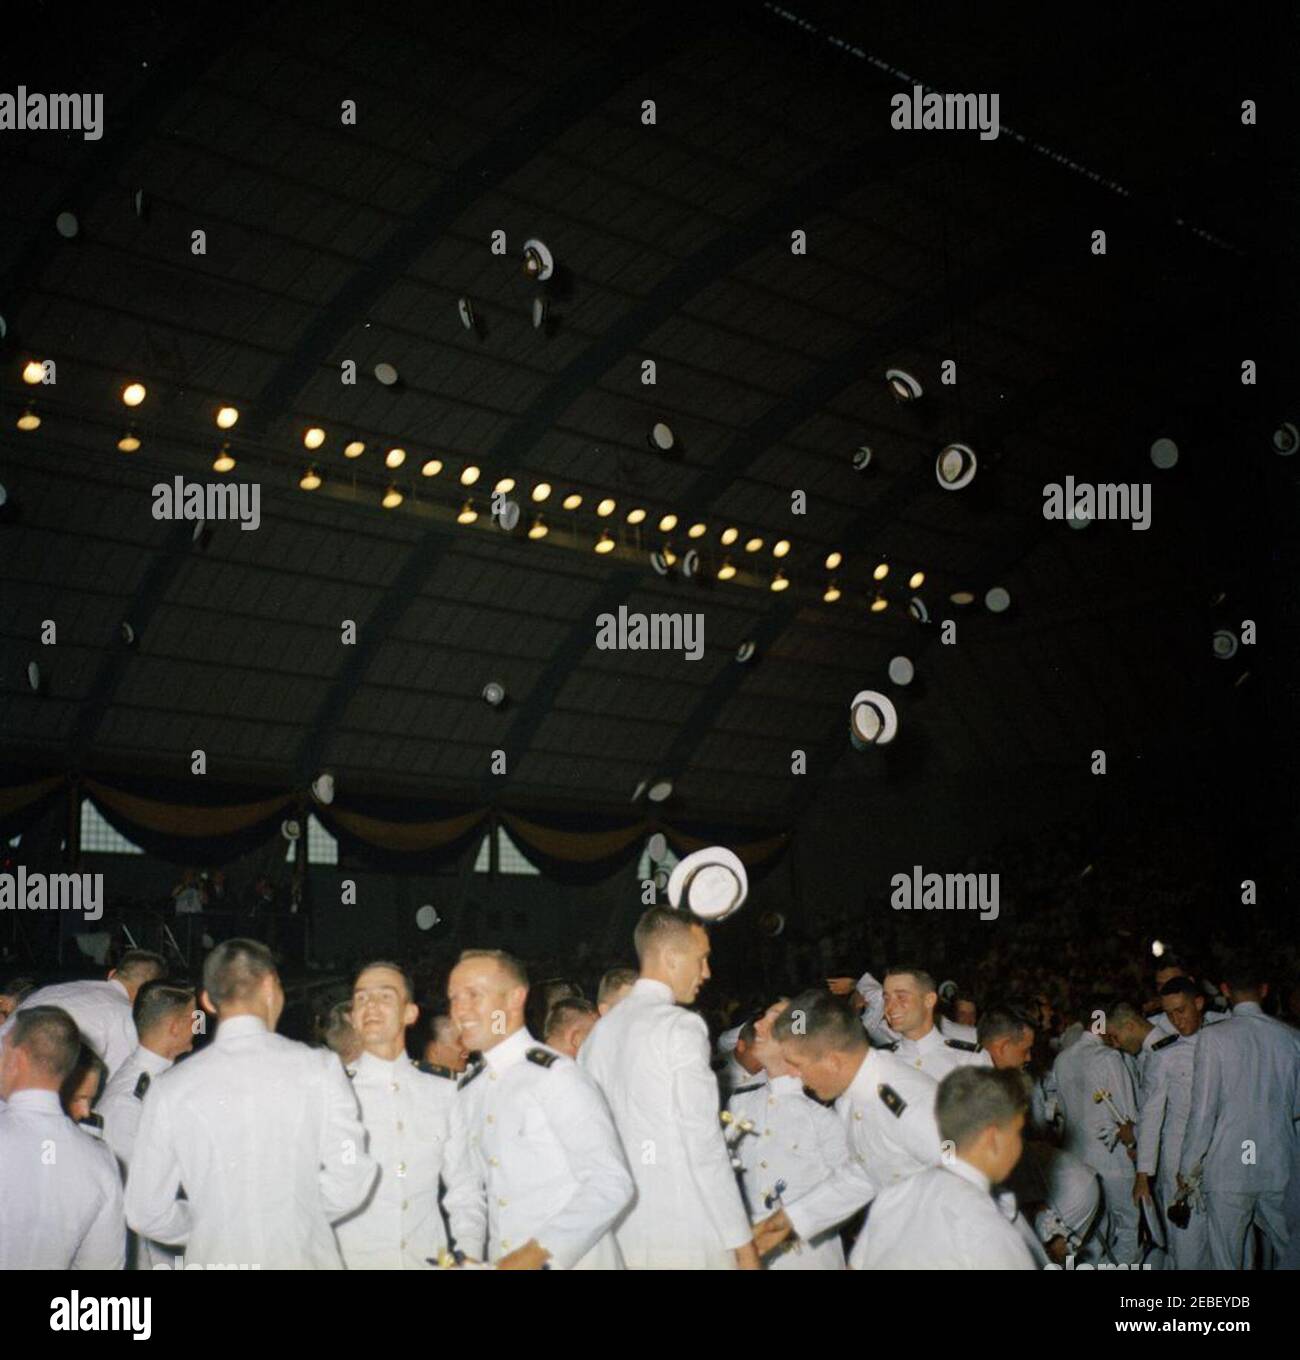 Allocution de commencement à la US Naval Academy, Annapolis, Maryland, 11:04AM. Les cadets de la United States Naval Academy cérémonie de commencement, Annapolis, Maryland. Banque D'Images